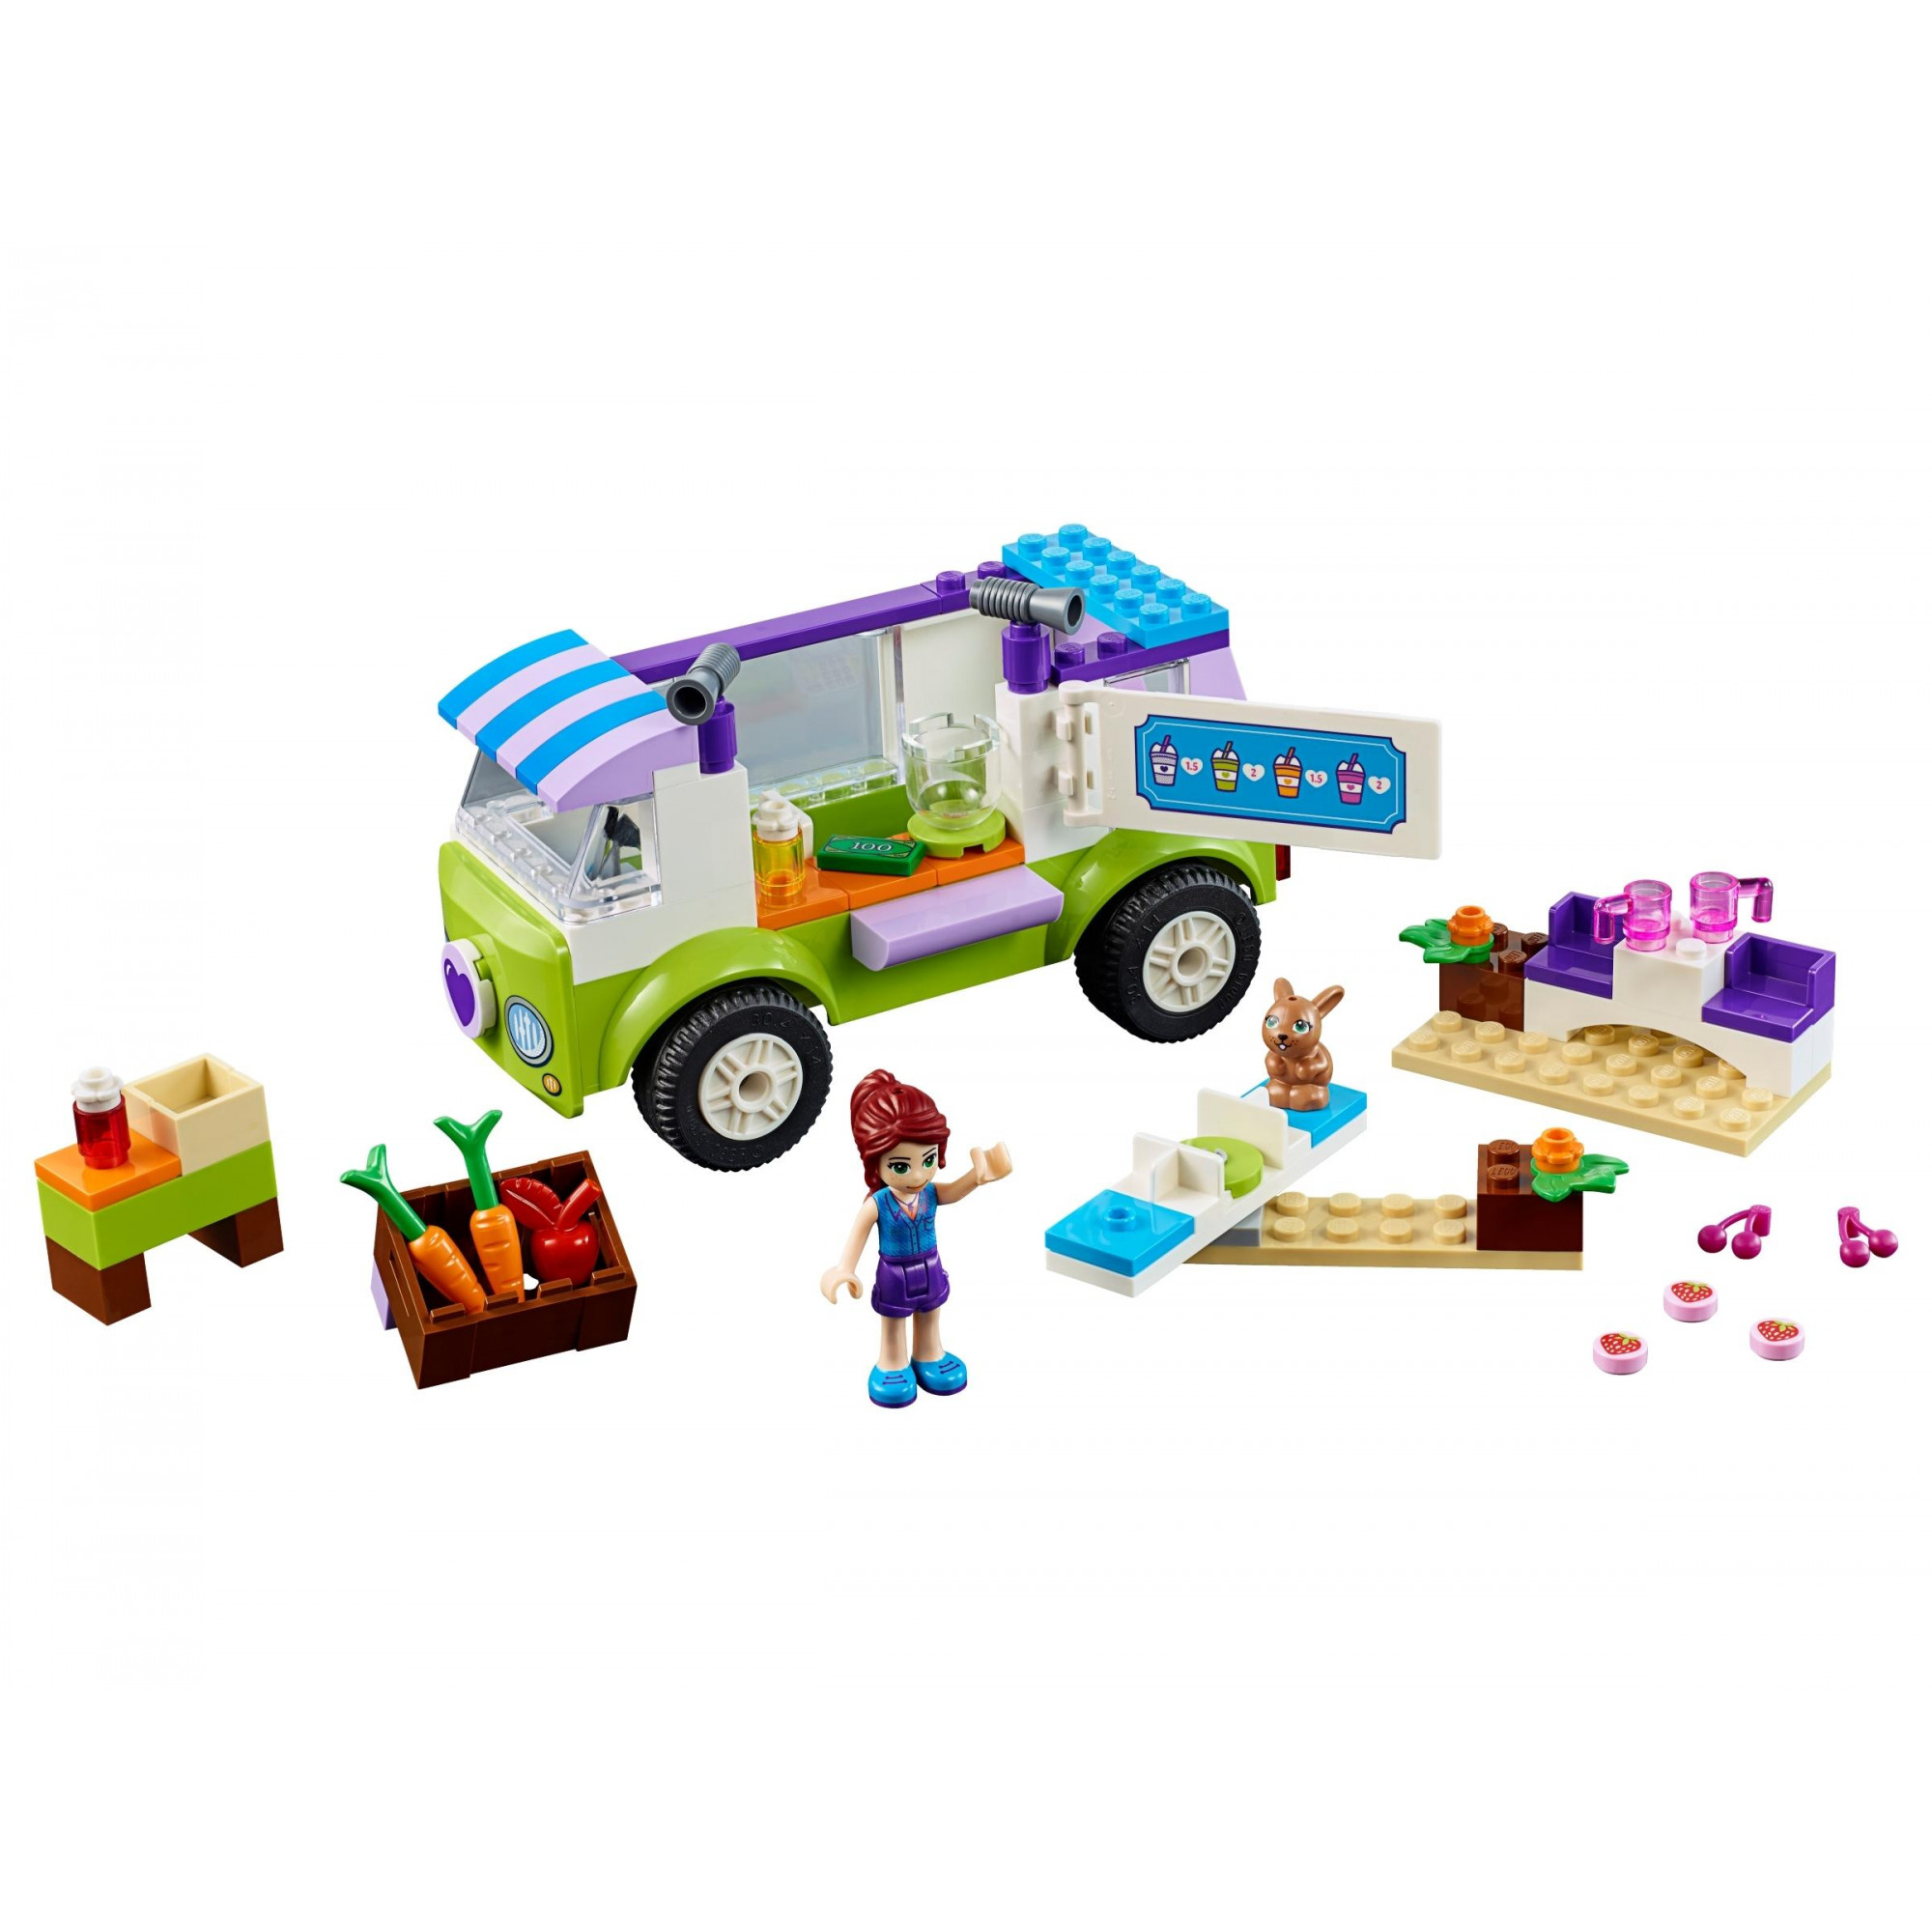 LEGO Juniors Рынок органических продуктов (10749) - зображення 1